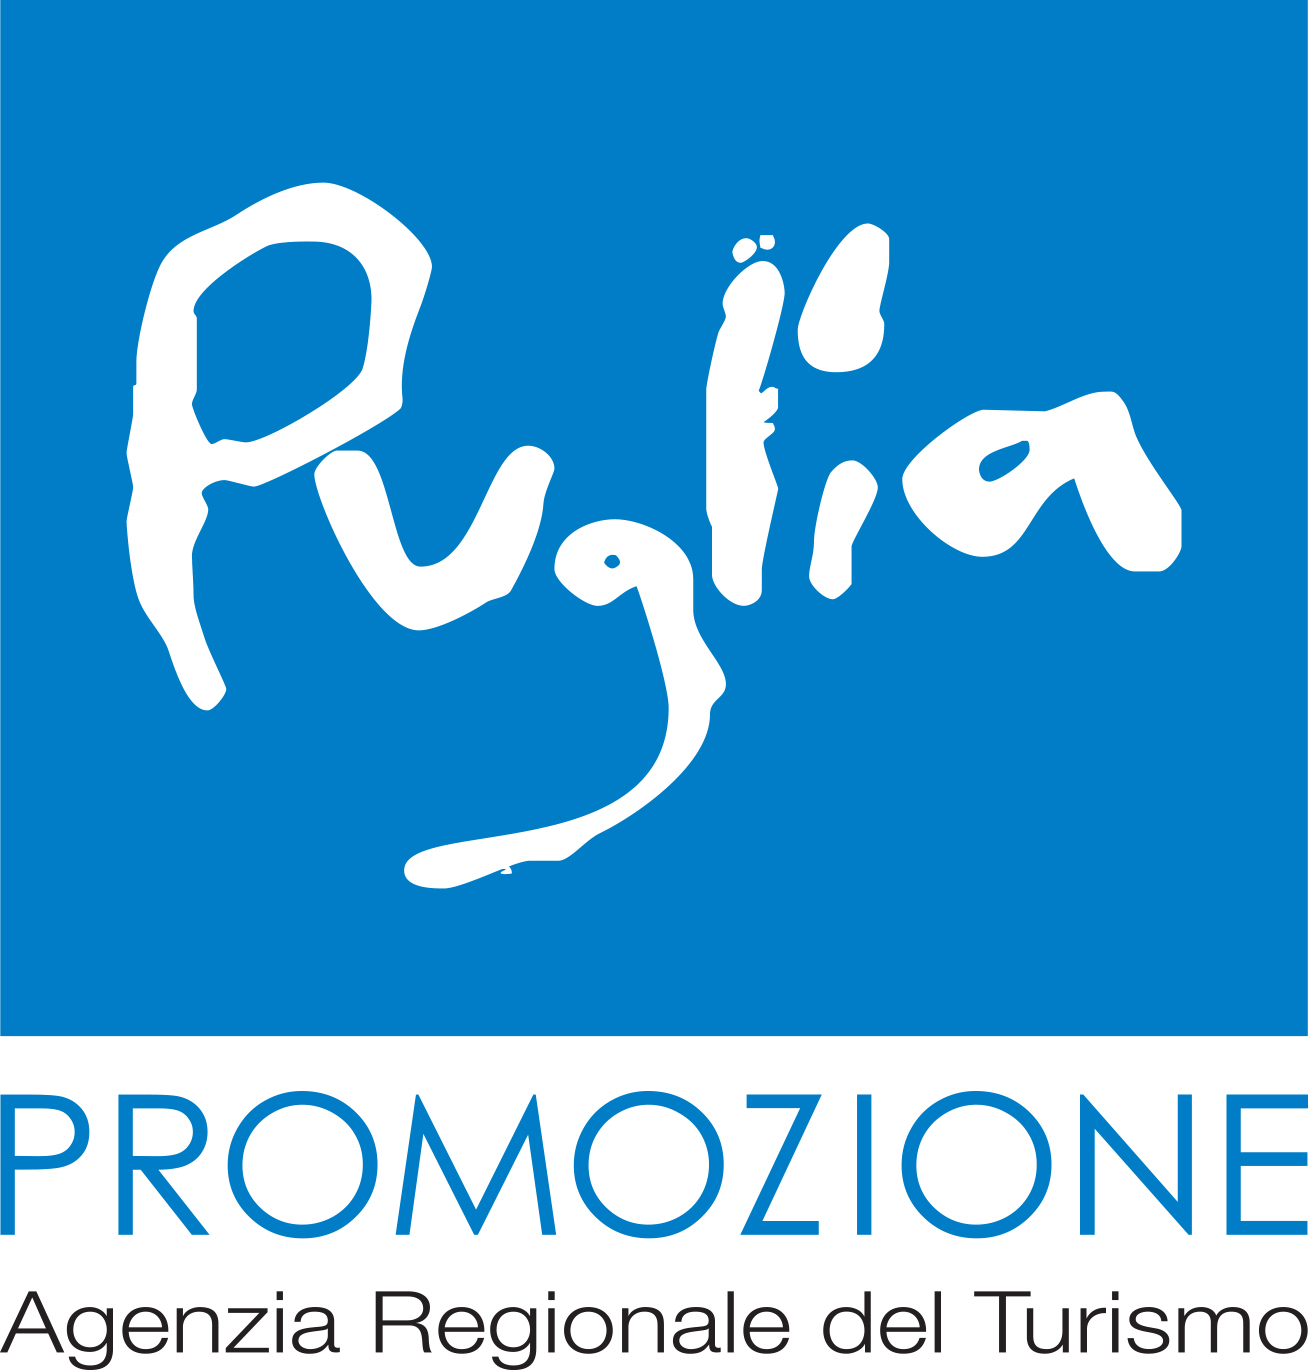 Agenzia Regionale del Turismo (ARET) Pugliapromozione : Brand Short Description Type Here.